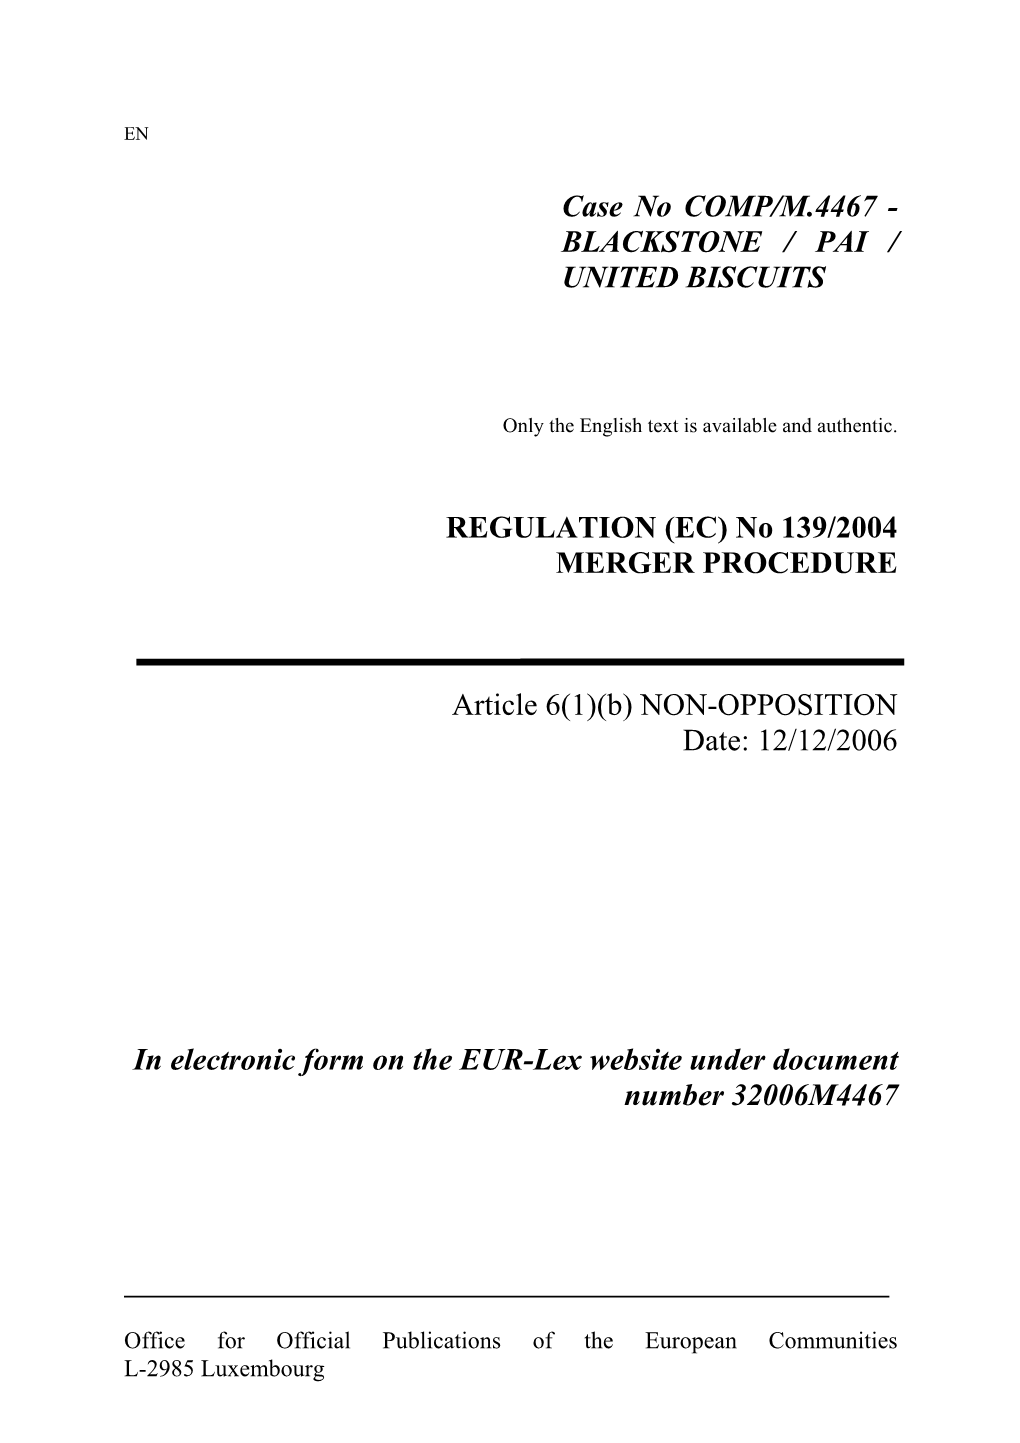 EC) No 139/2004 MERGER PROCEDURE Article 6(1)(B